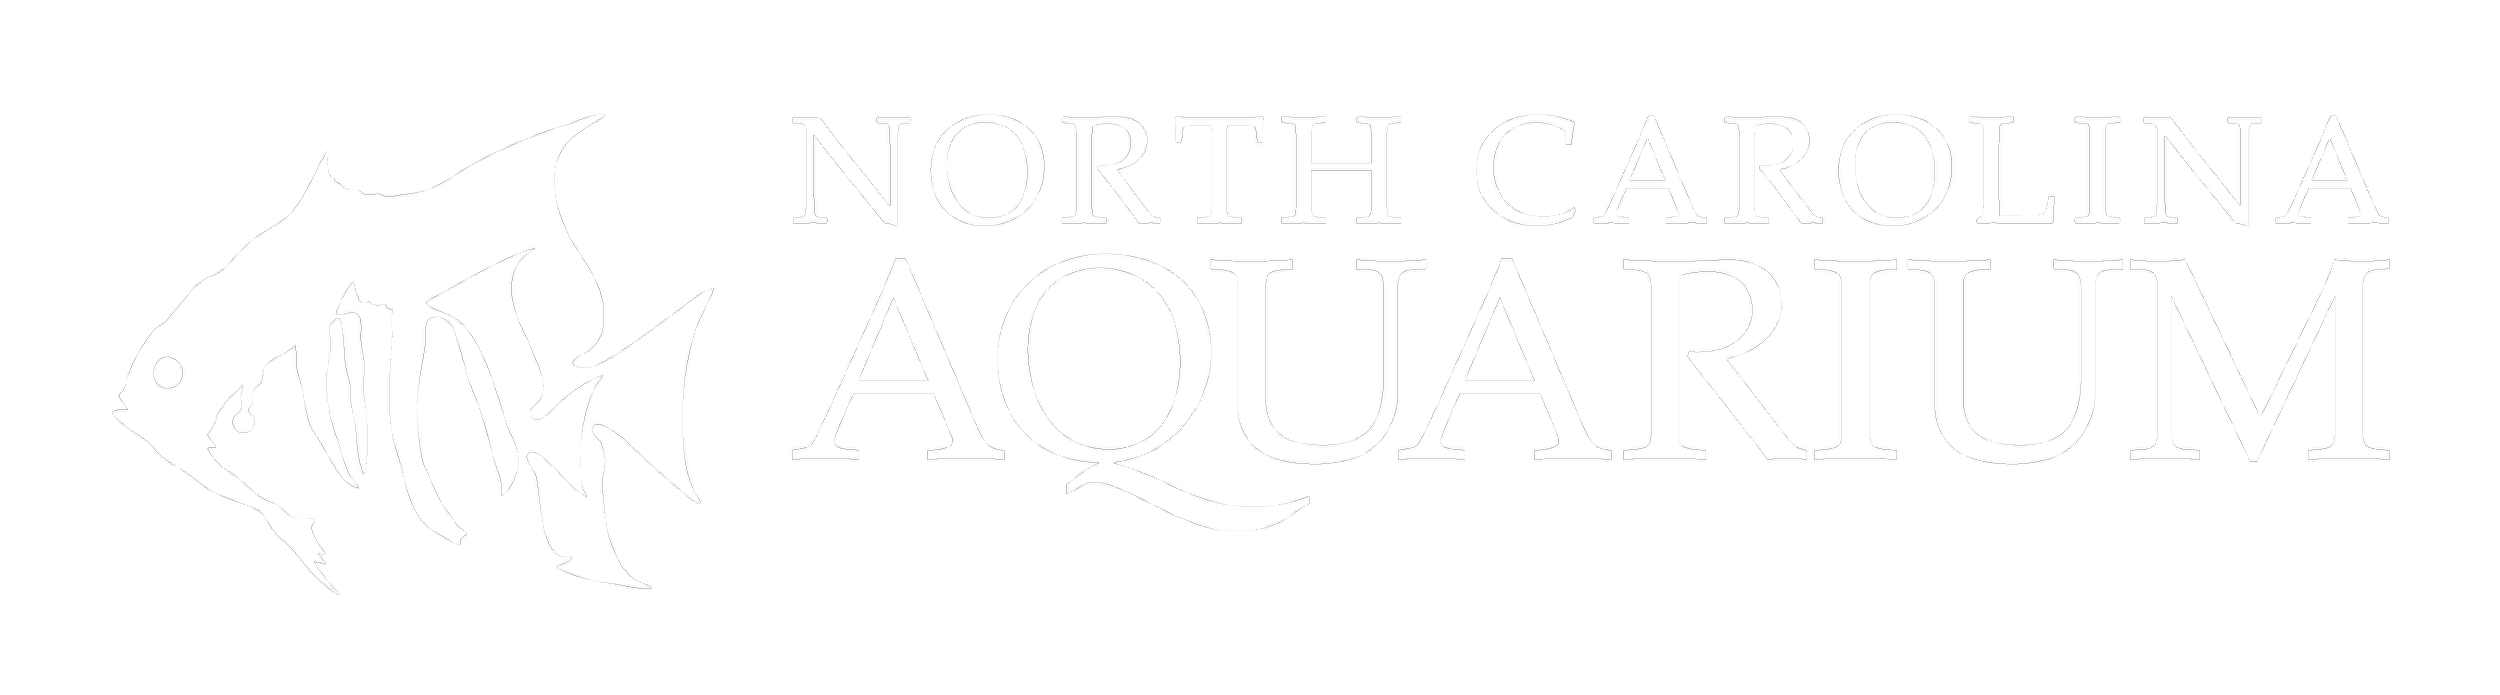 North Carolina Aquarium.png